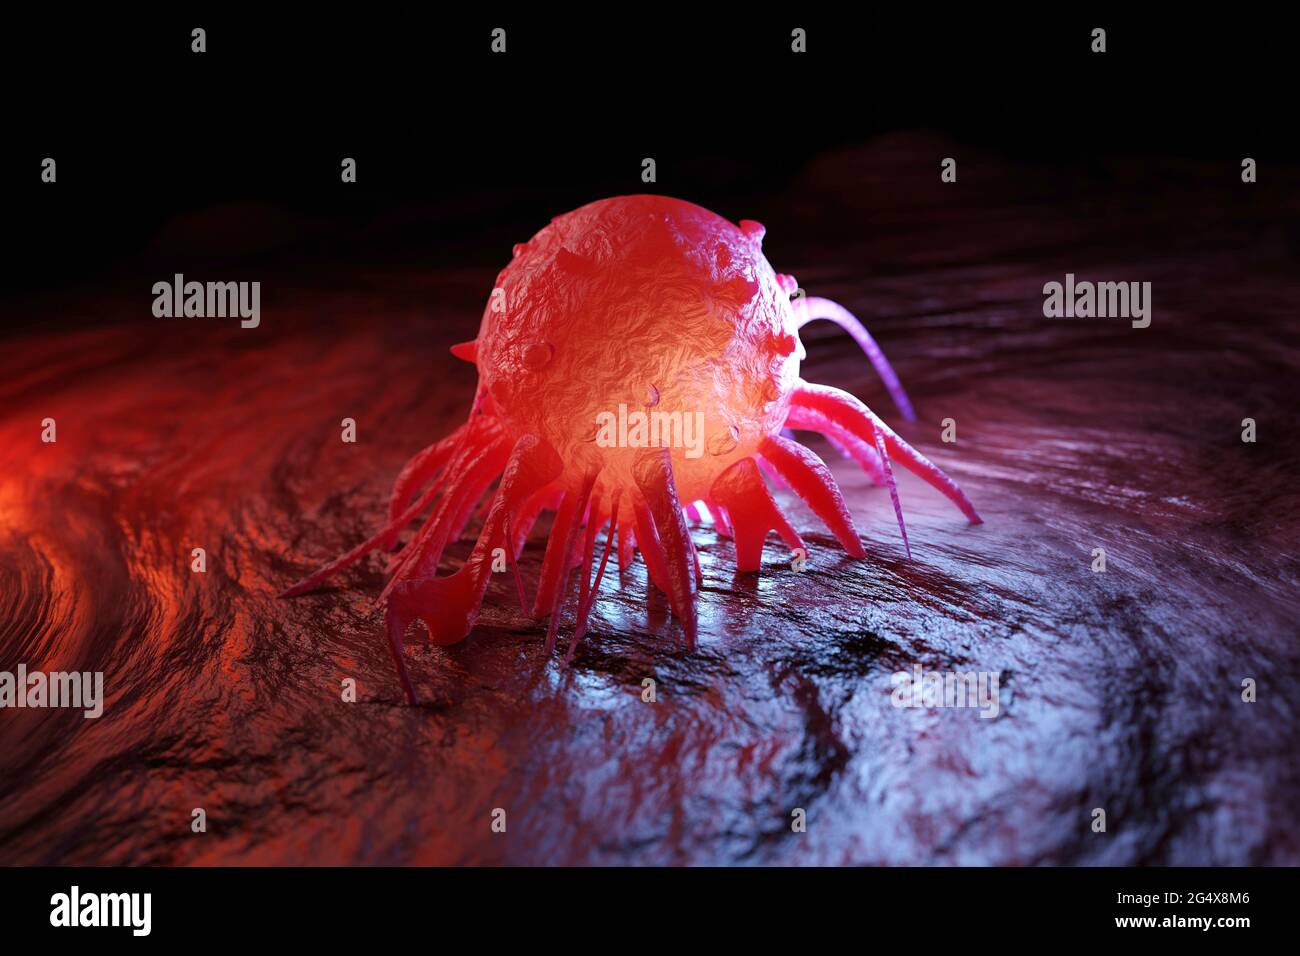 Illustrazione 3D della cellula tumorale nel corpo umano Foto Stock